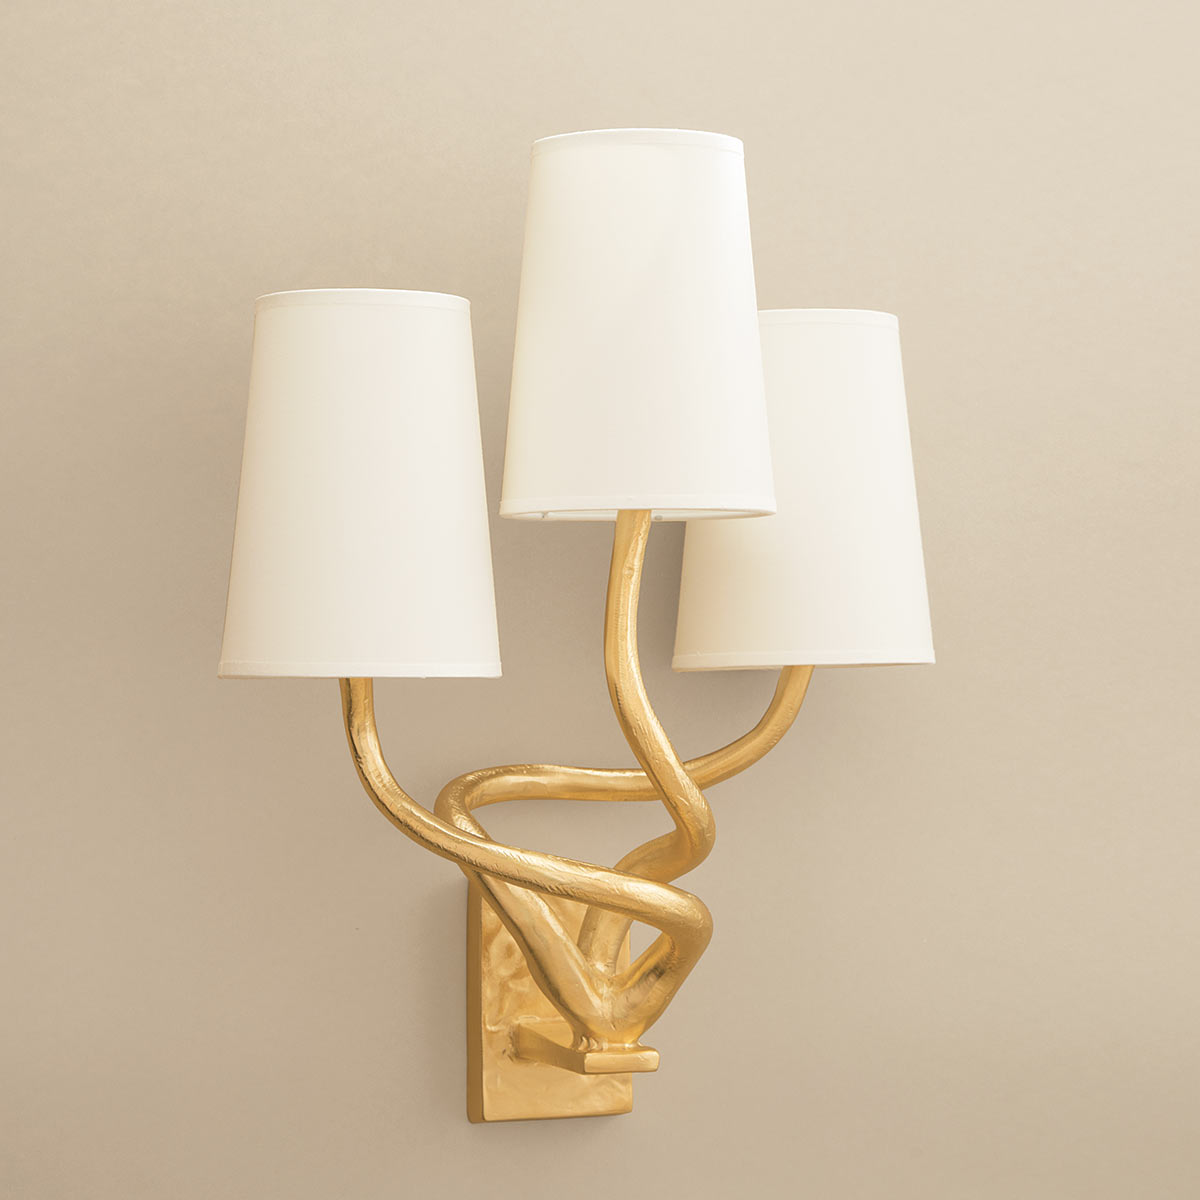 objet-insolite-triple-applique-bronze-or-Decoris-Interior_Design-Zurich.jpg